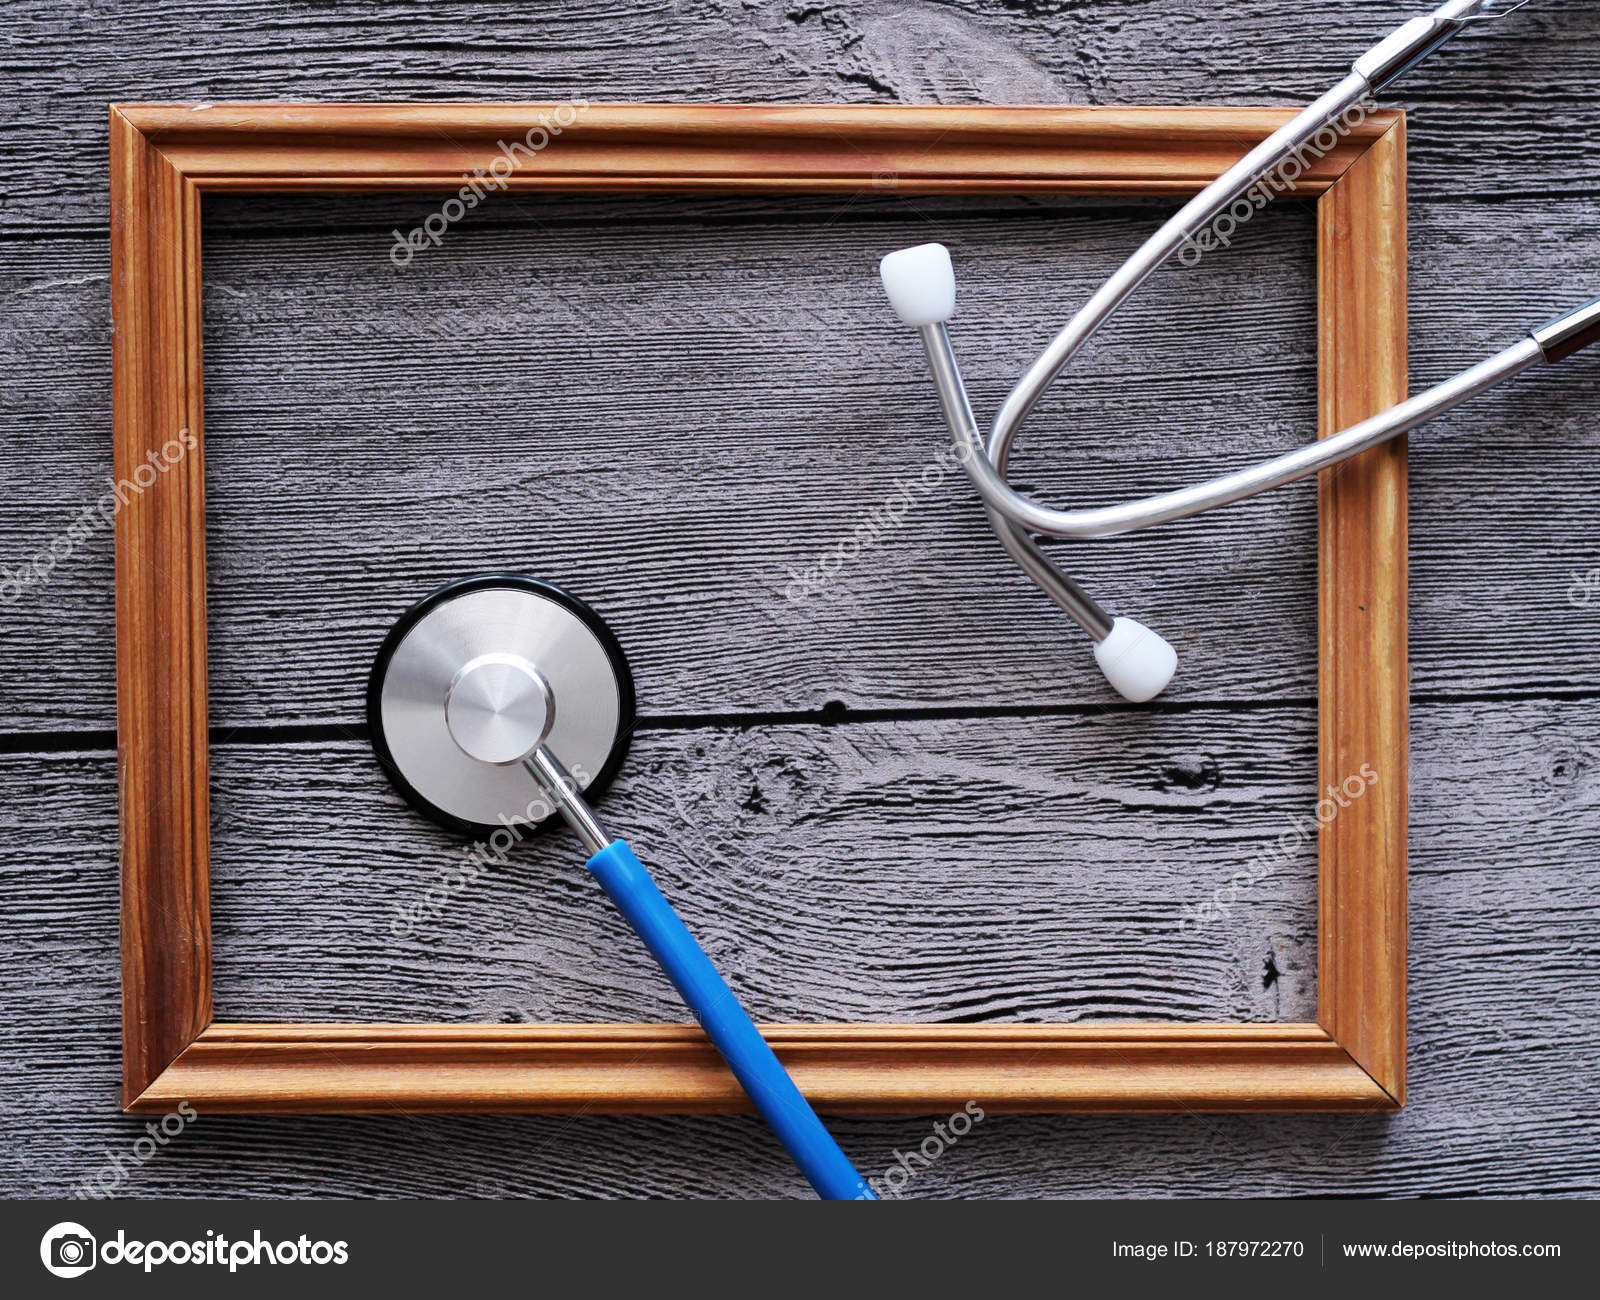 Fotos: marcos para dia del medico | estetoscopio para médico y marco de